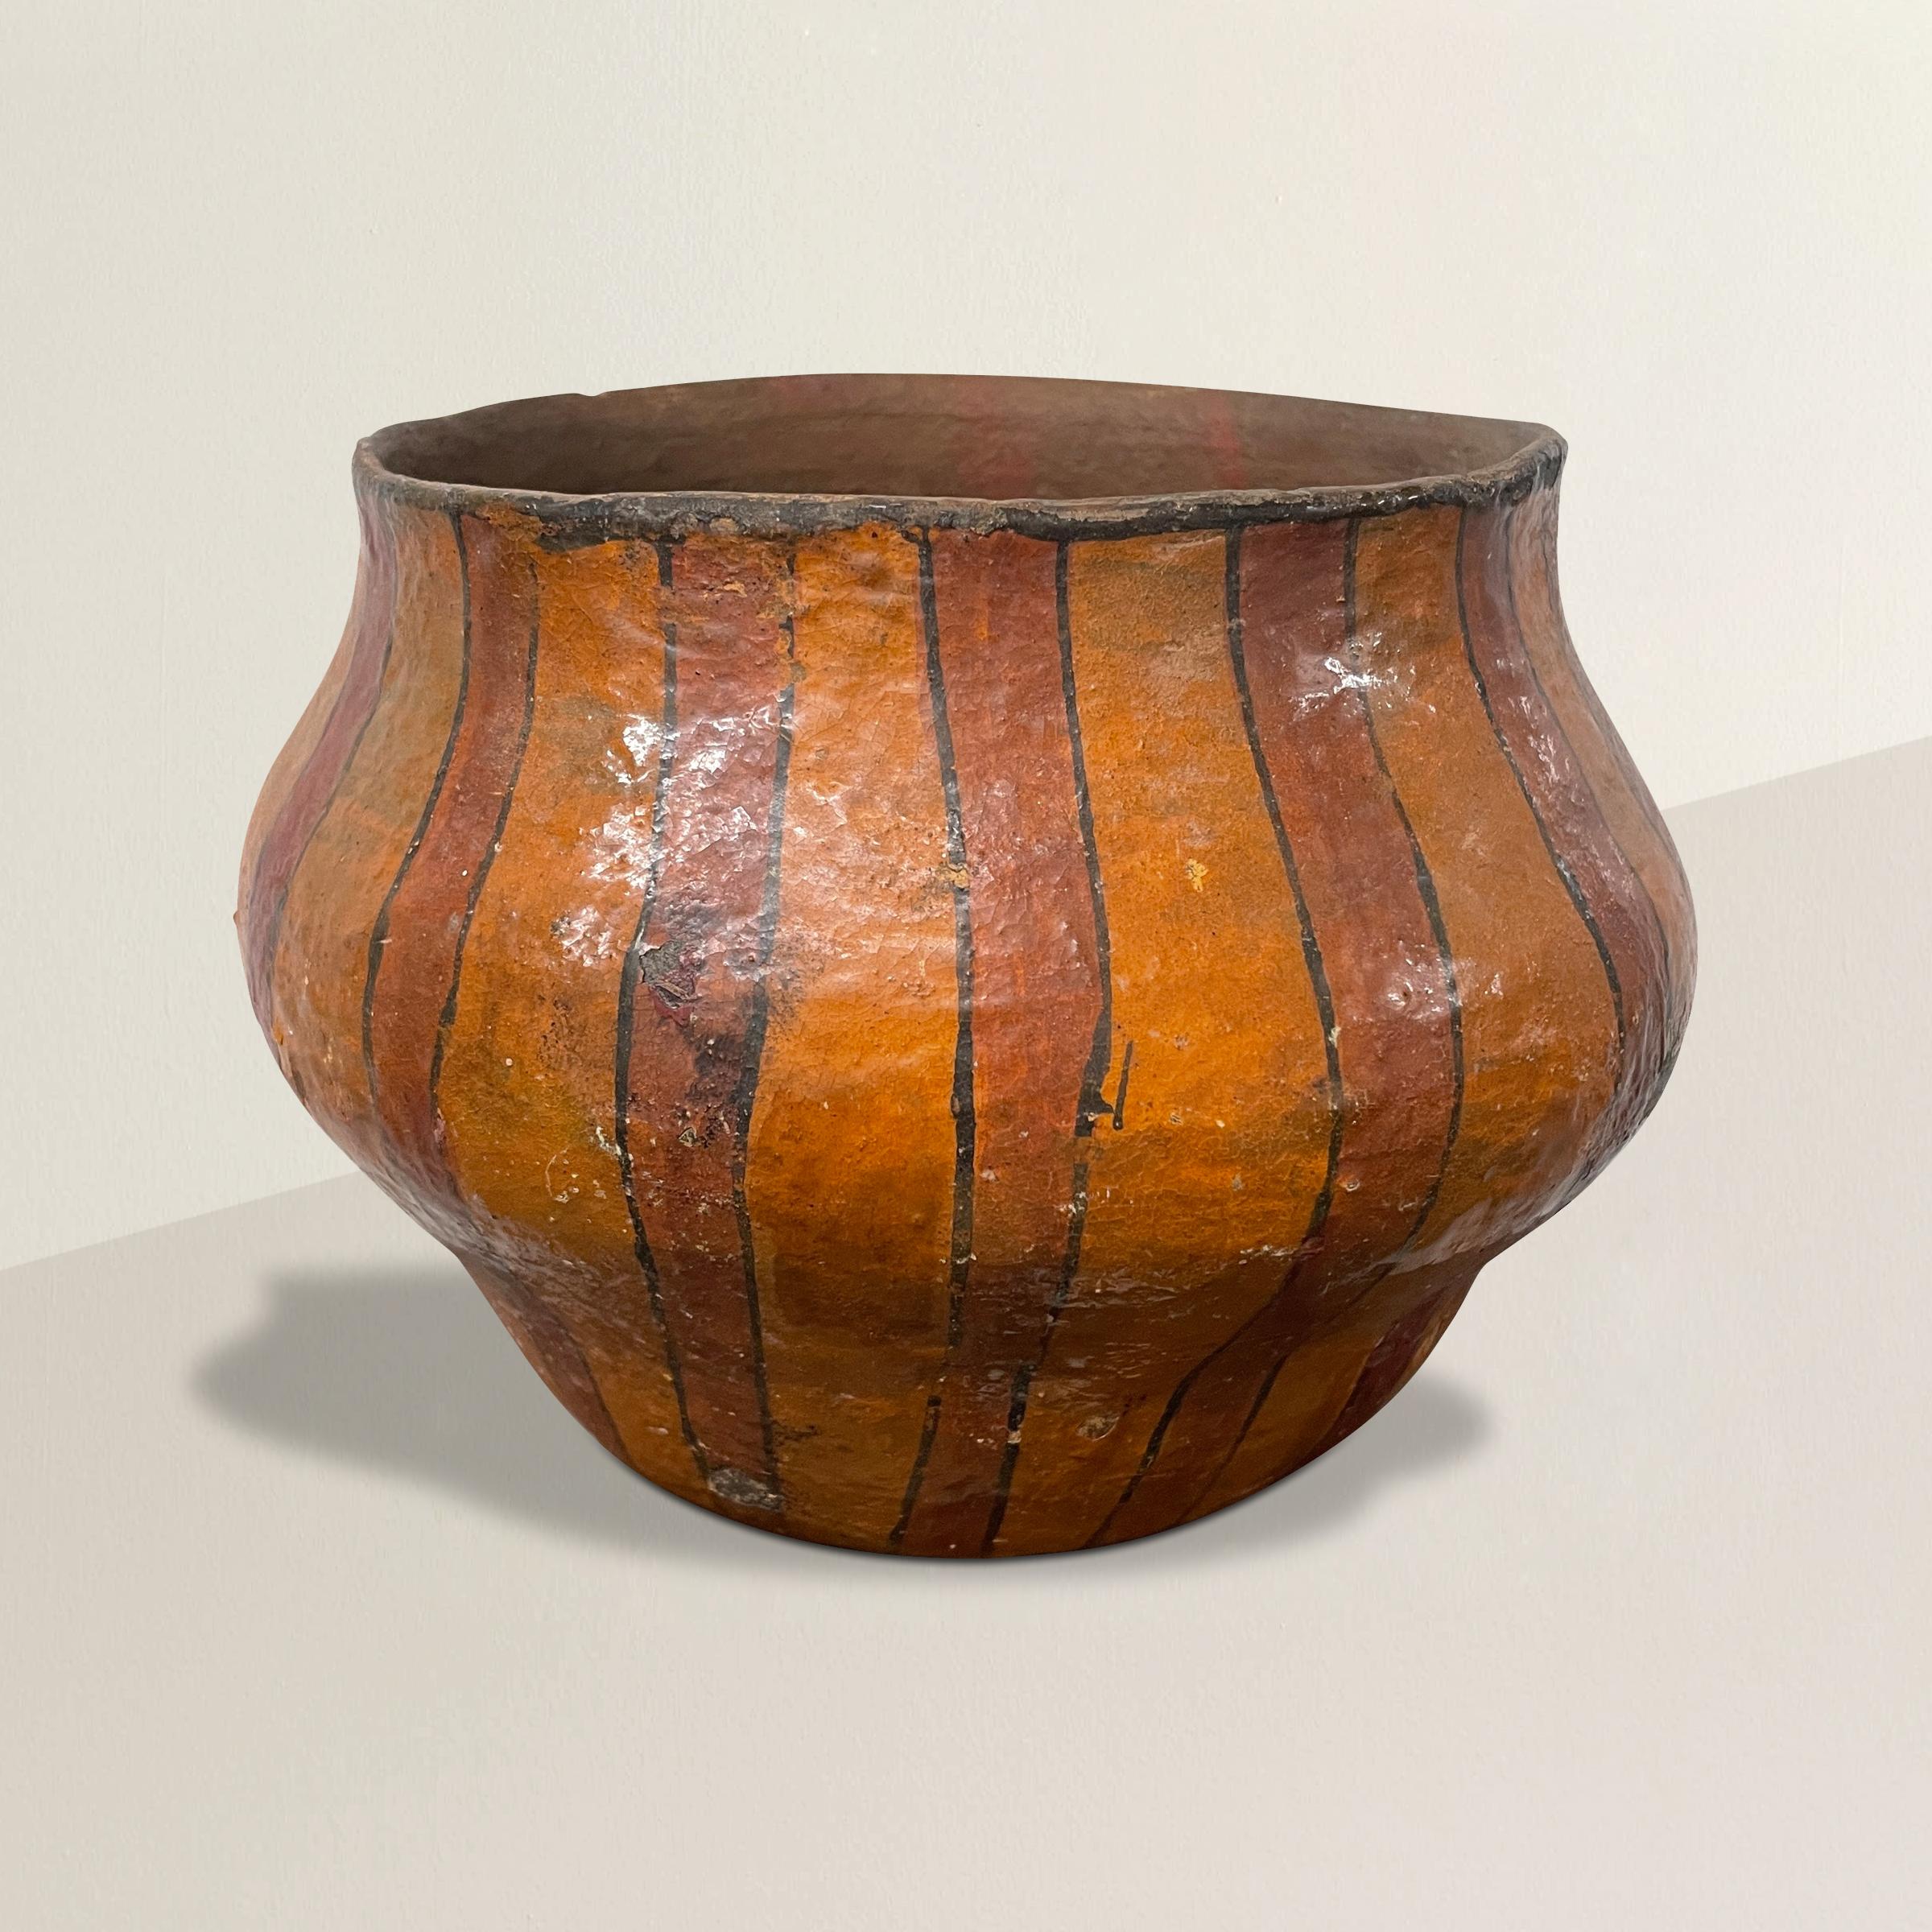 Un saisissant pot Shipibo amazonien du 20e siècle, fabriqué à la main en argile, décoré de larges lignes rouges et oranges, et vernissé du saphir d'un arbre. Les membres de la tribu Shipibo créent le pot, généralement décoré de motifs géométriques